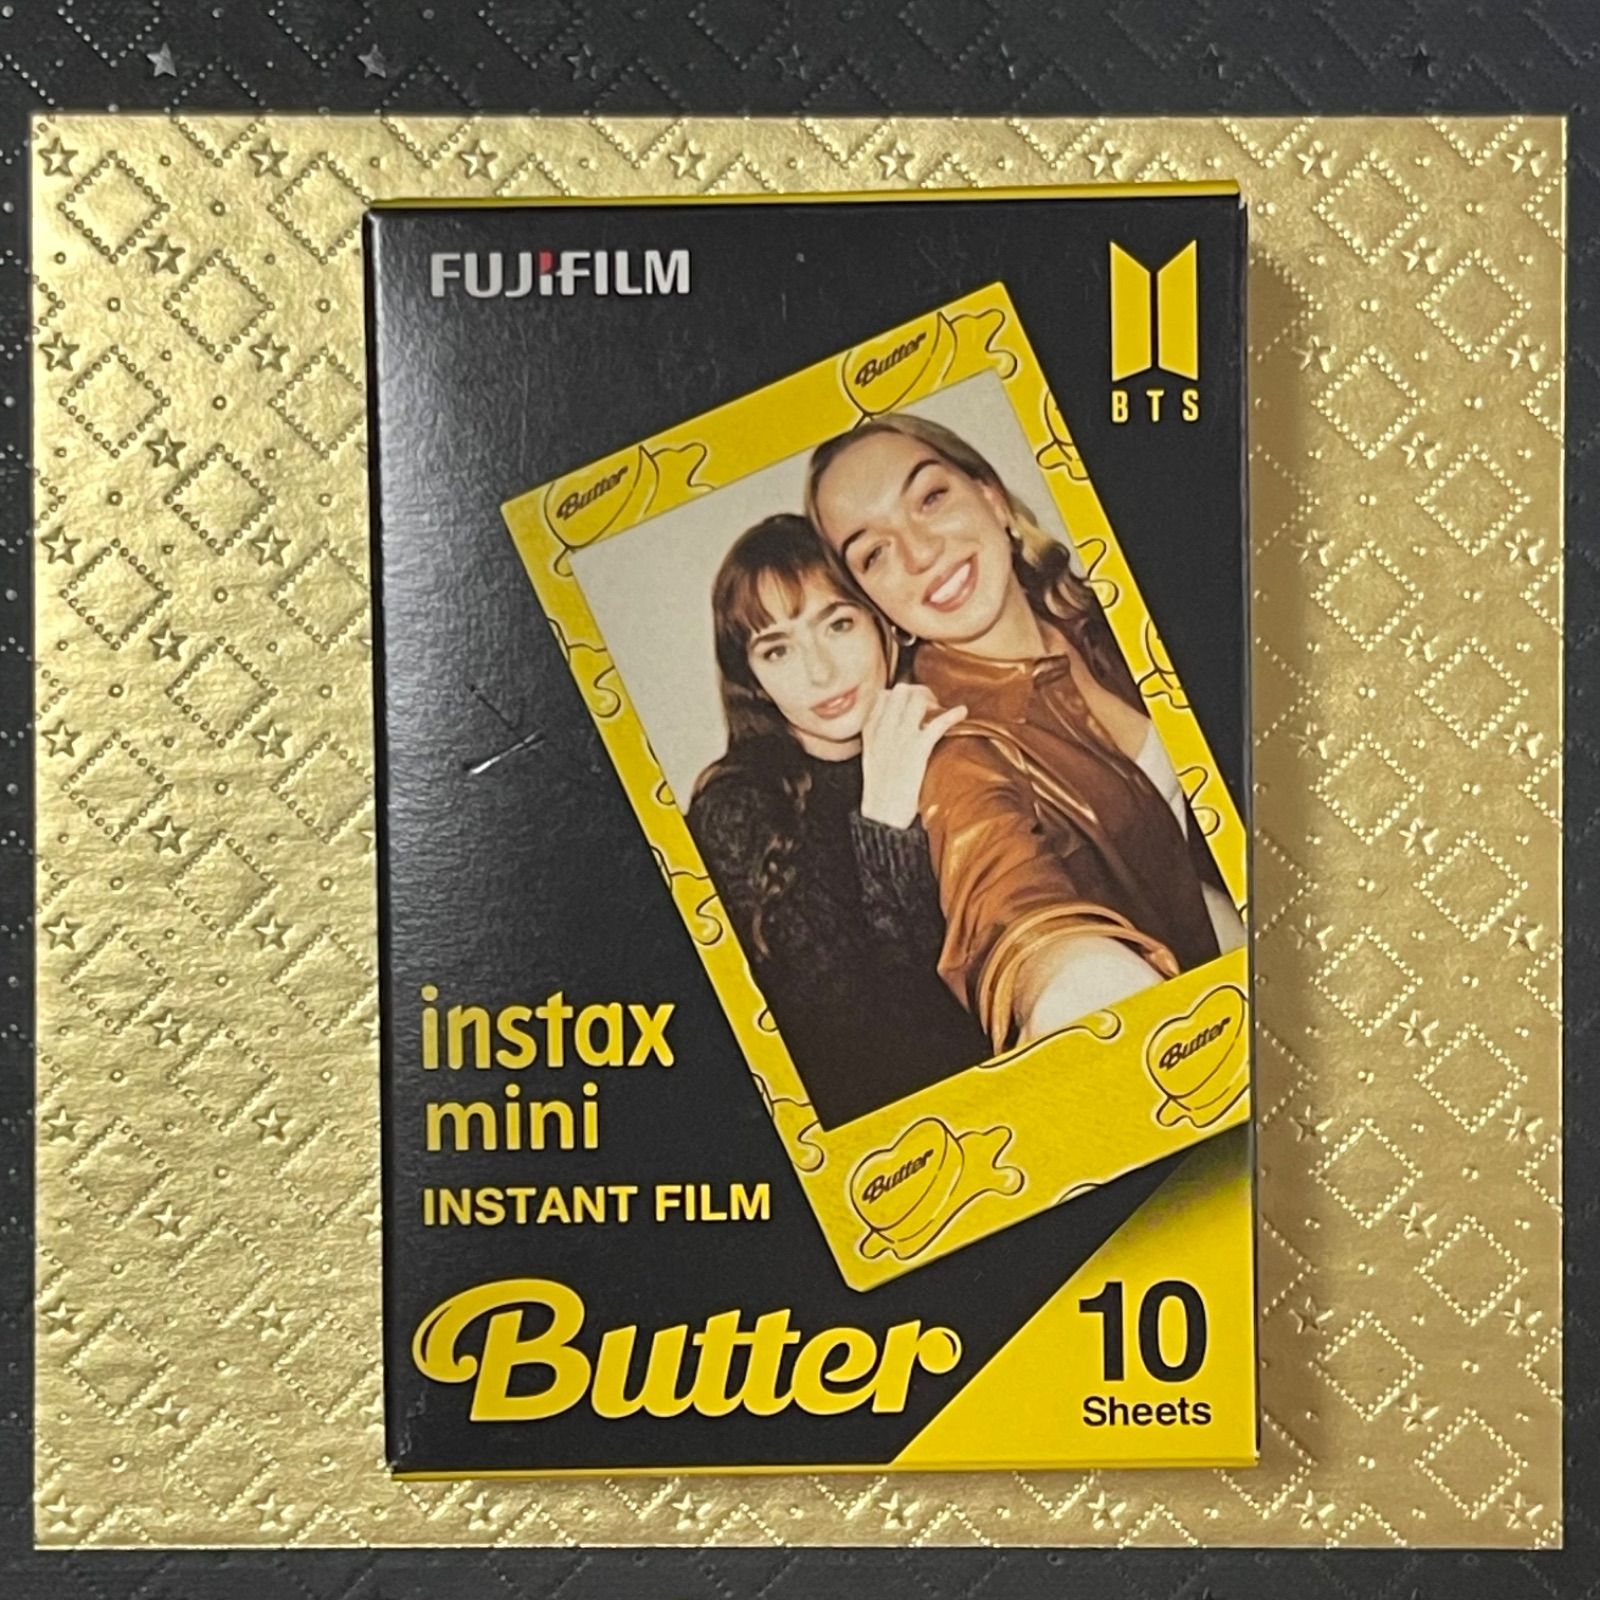 BTS Butter チェキ - くまきち - メルカリ